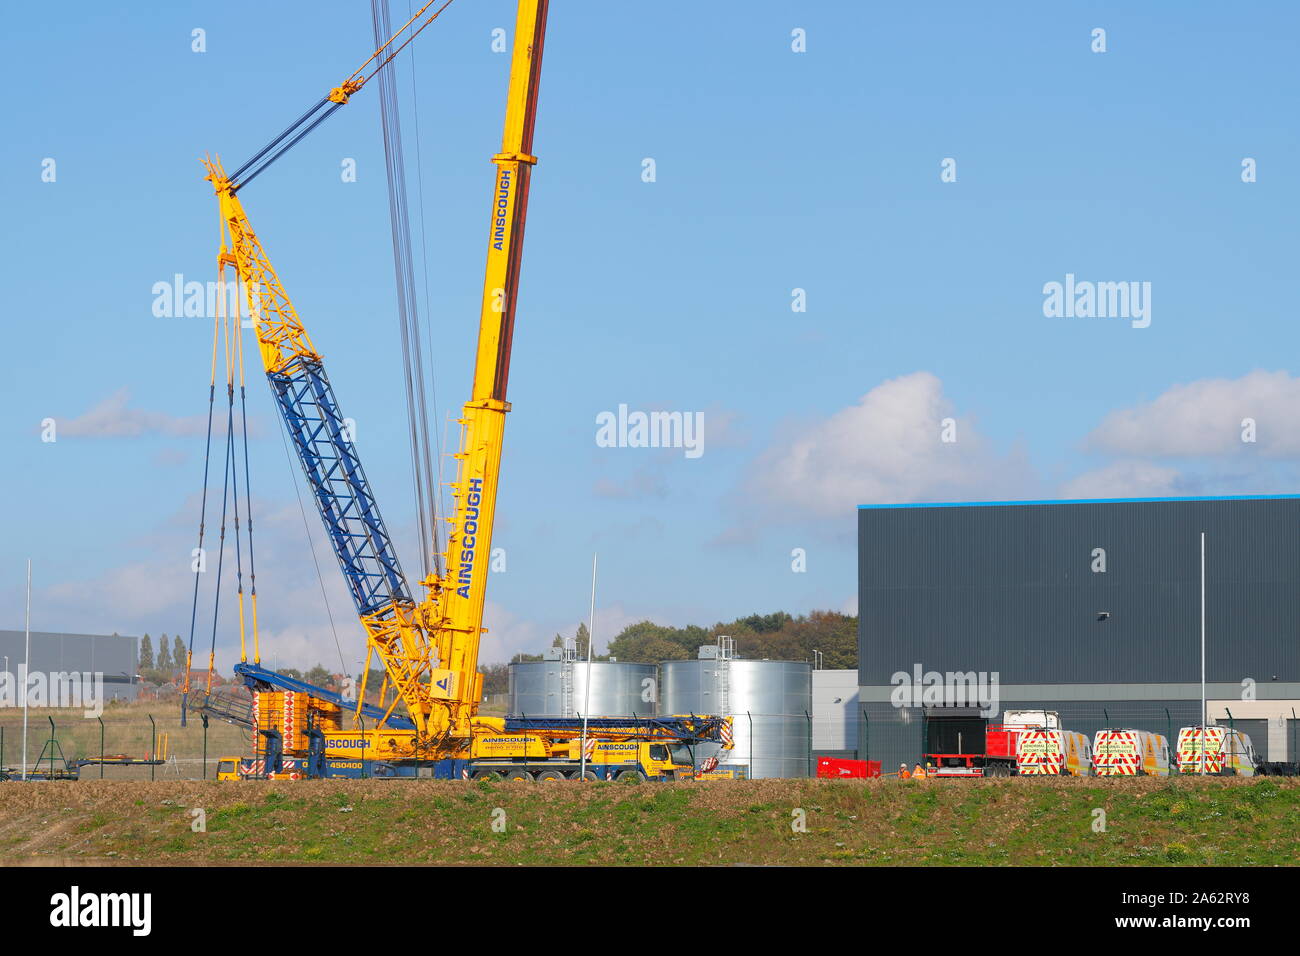 Ein 1000 Tonnen Kran eingerichtet wurde und betriebsbereit ist,  Klimaanlagen auf die neue Amazon Warehouse am Bügel Grün zu heben in Leeds  Stockfotografie - Alamy